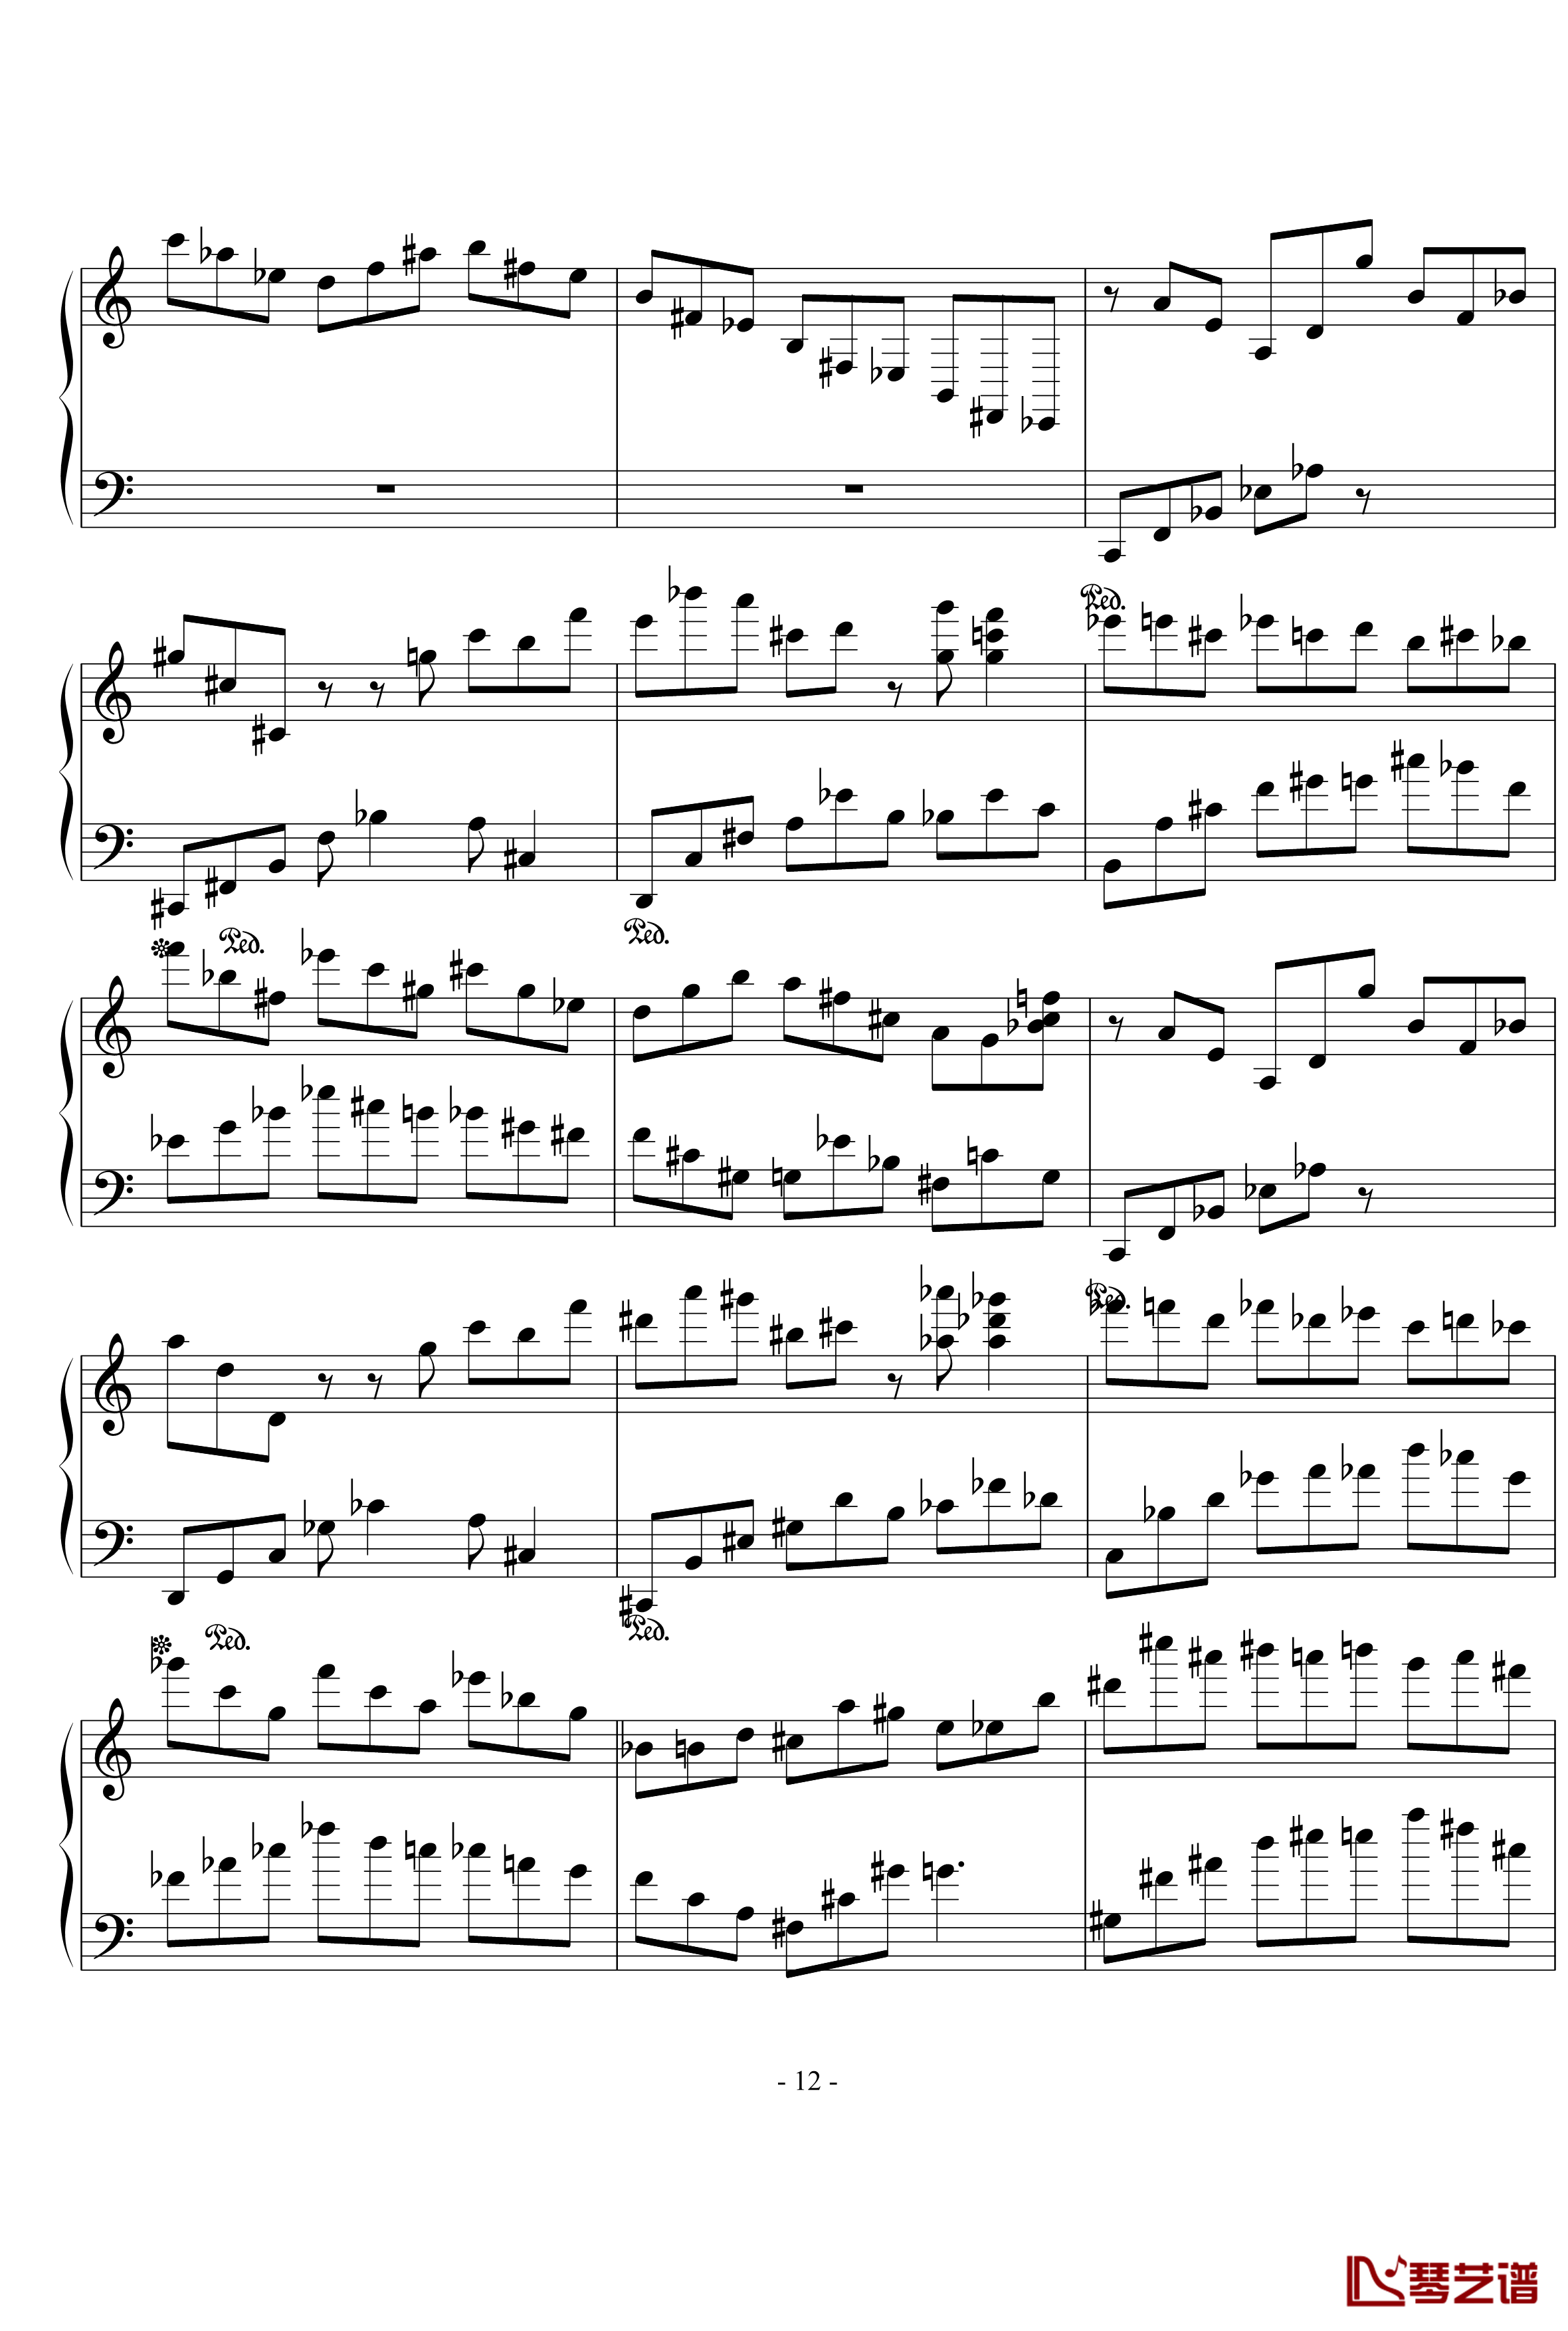 浪漫主义音乐的传统钢琴谱-幻想曲-D大调-流行追梦人12